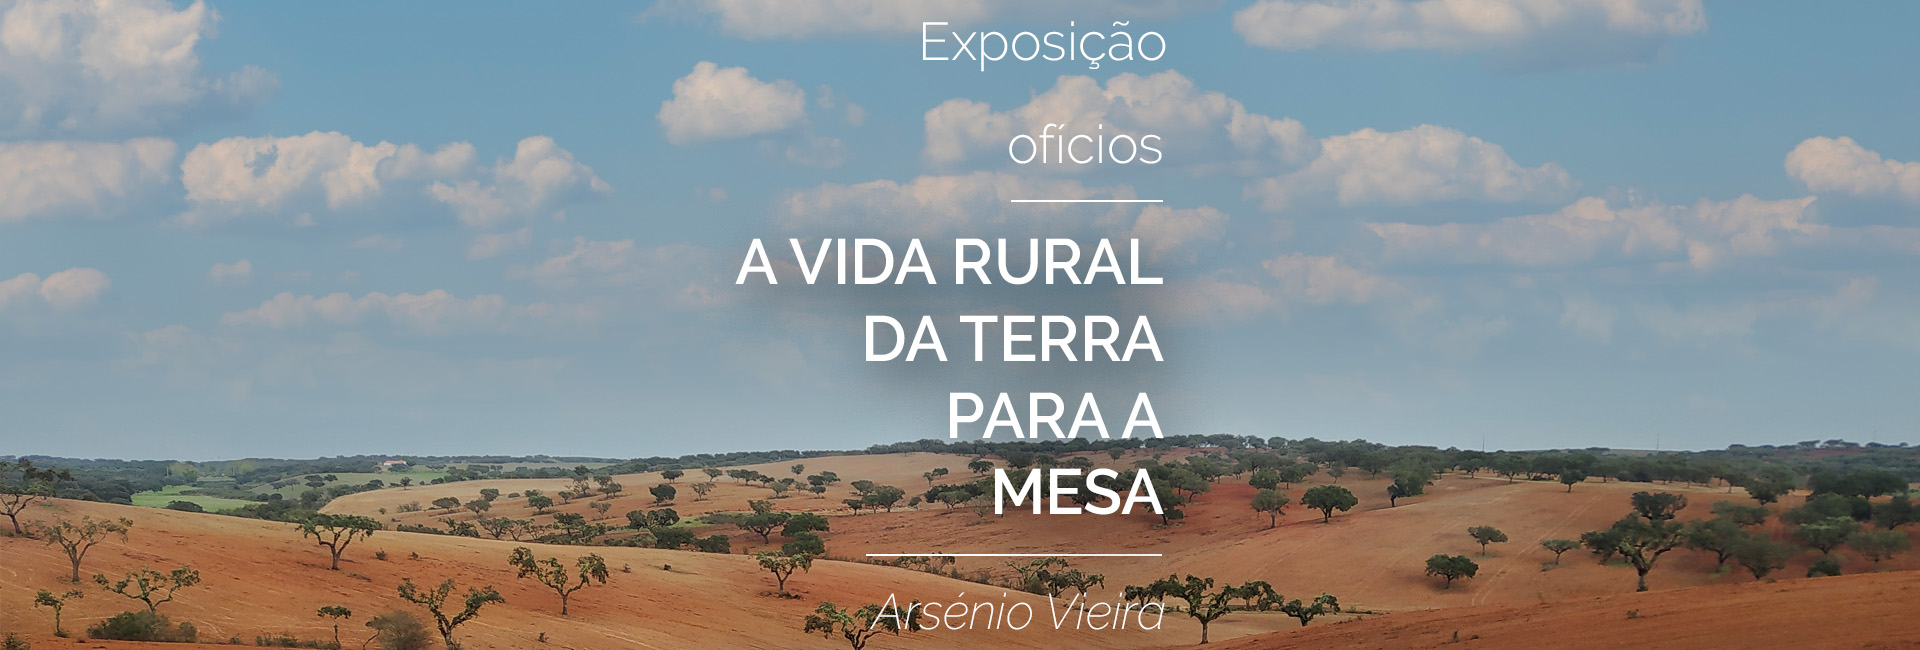 Exposição “Ofícios – A Vida Rural da Terra para a Mesa” de Arsénio Vieira | de 05 de novembro a 06 de janeiro | Museu Regional do Vinho de Redondo